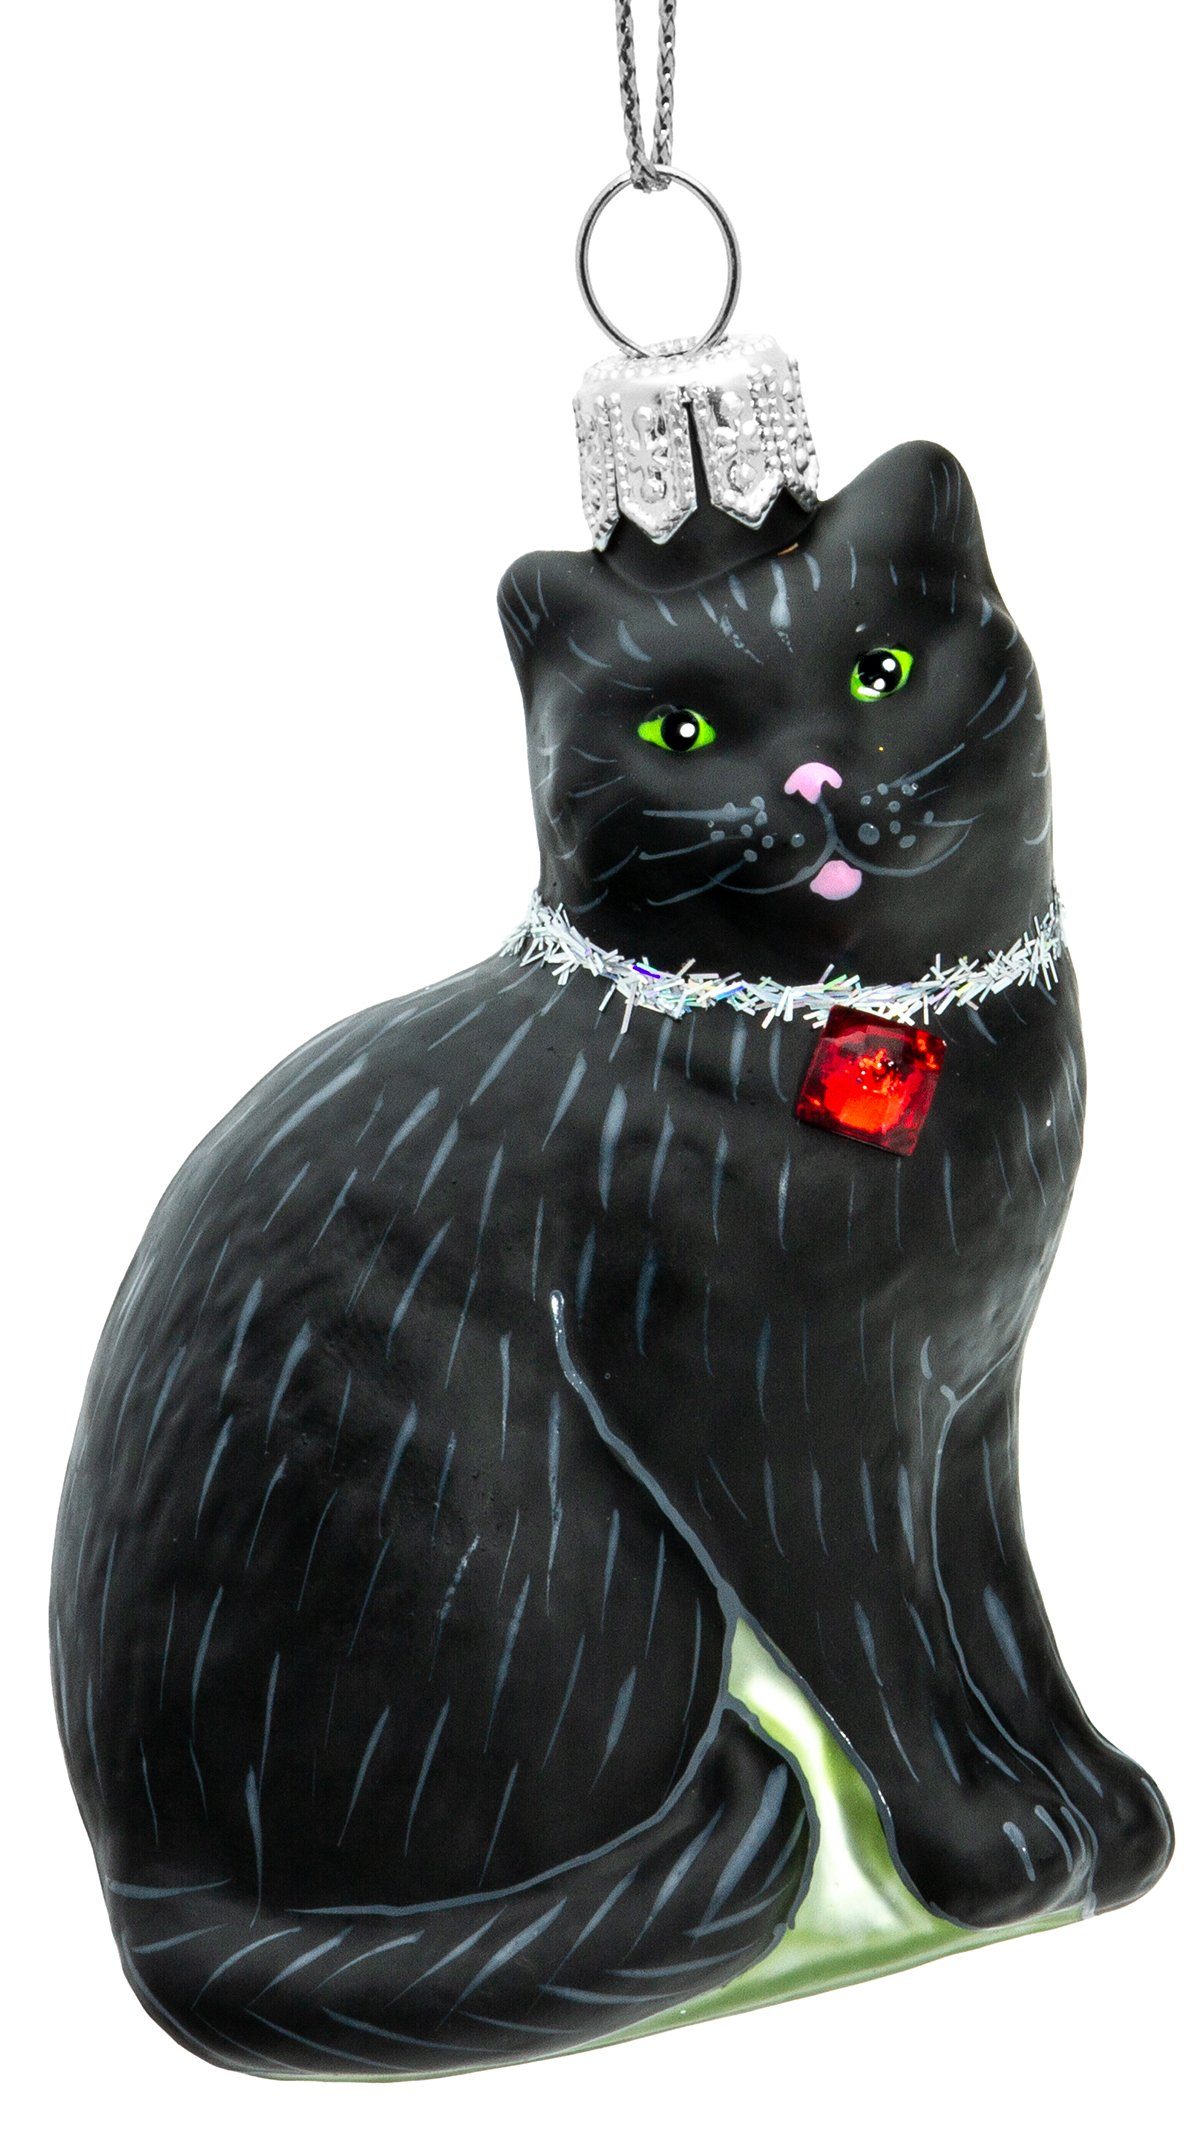 SIKORA Christbaumschmuck BS705 Katze Glas Figur Weihnachtsbaum Anhänger - Premium Line schwarz mit Kristall